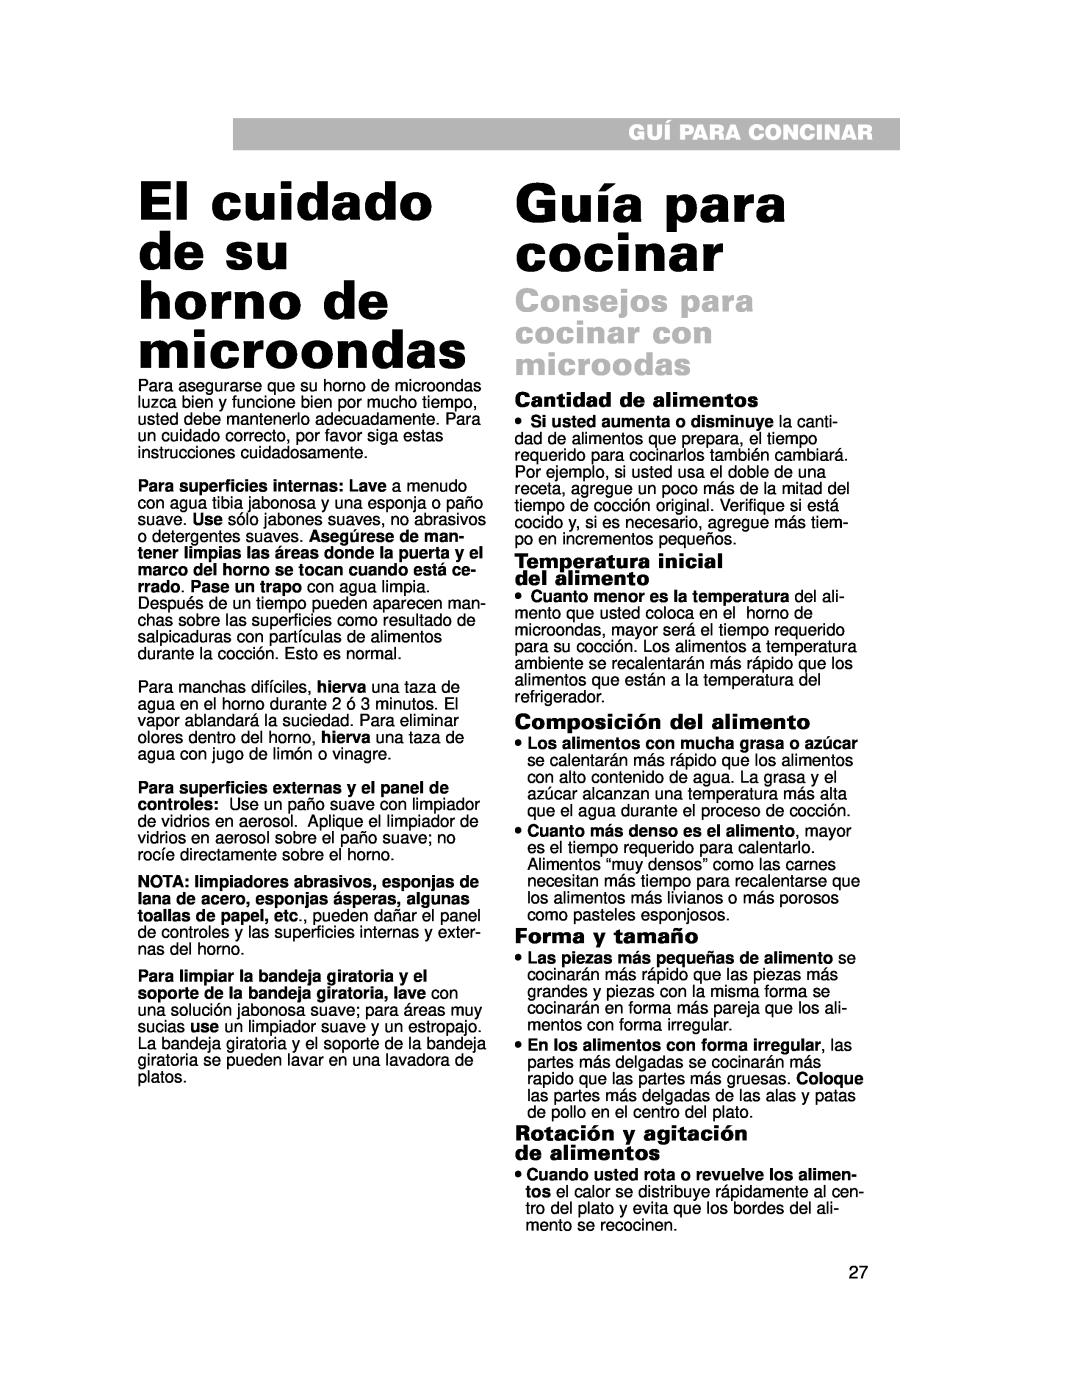 Whirlpool CMT102SG El cuidado de su horno de microondas, Guía para cocinar, Consejos para cocinar con microodas 